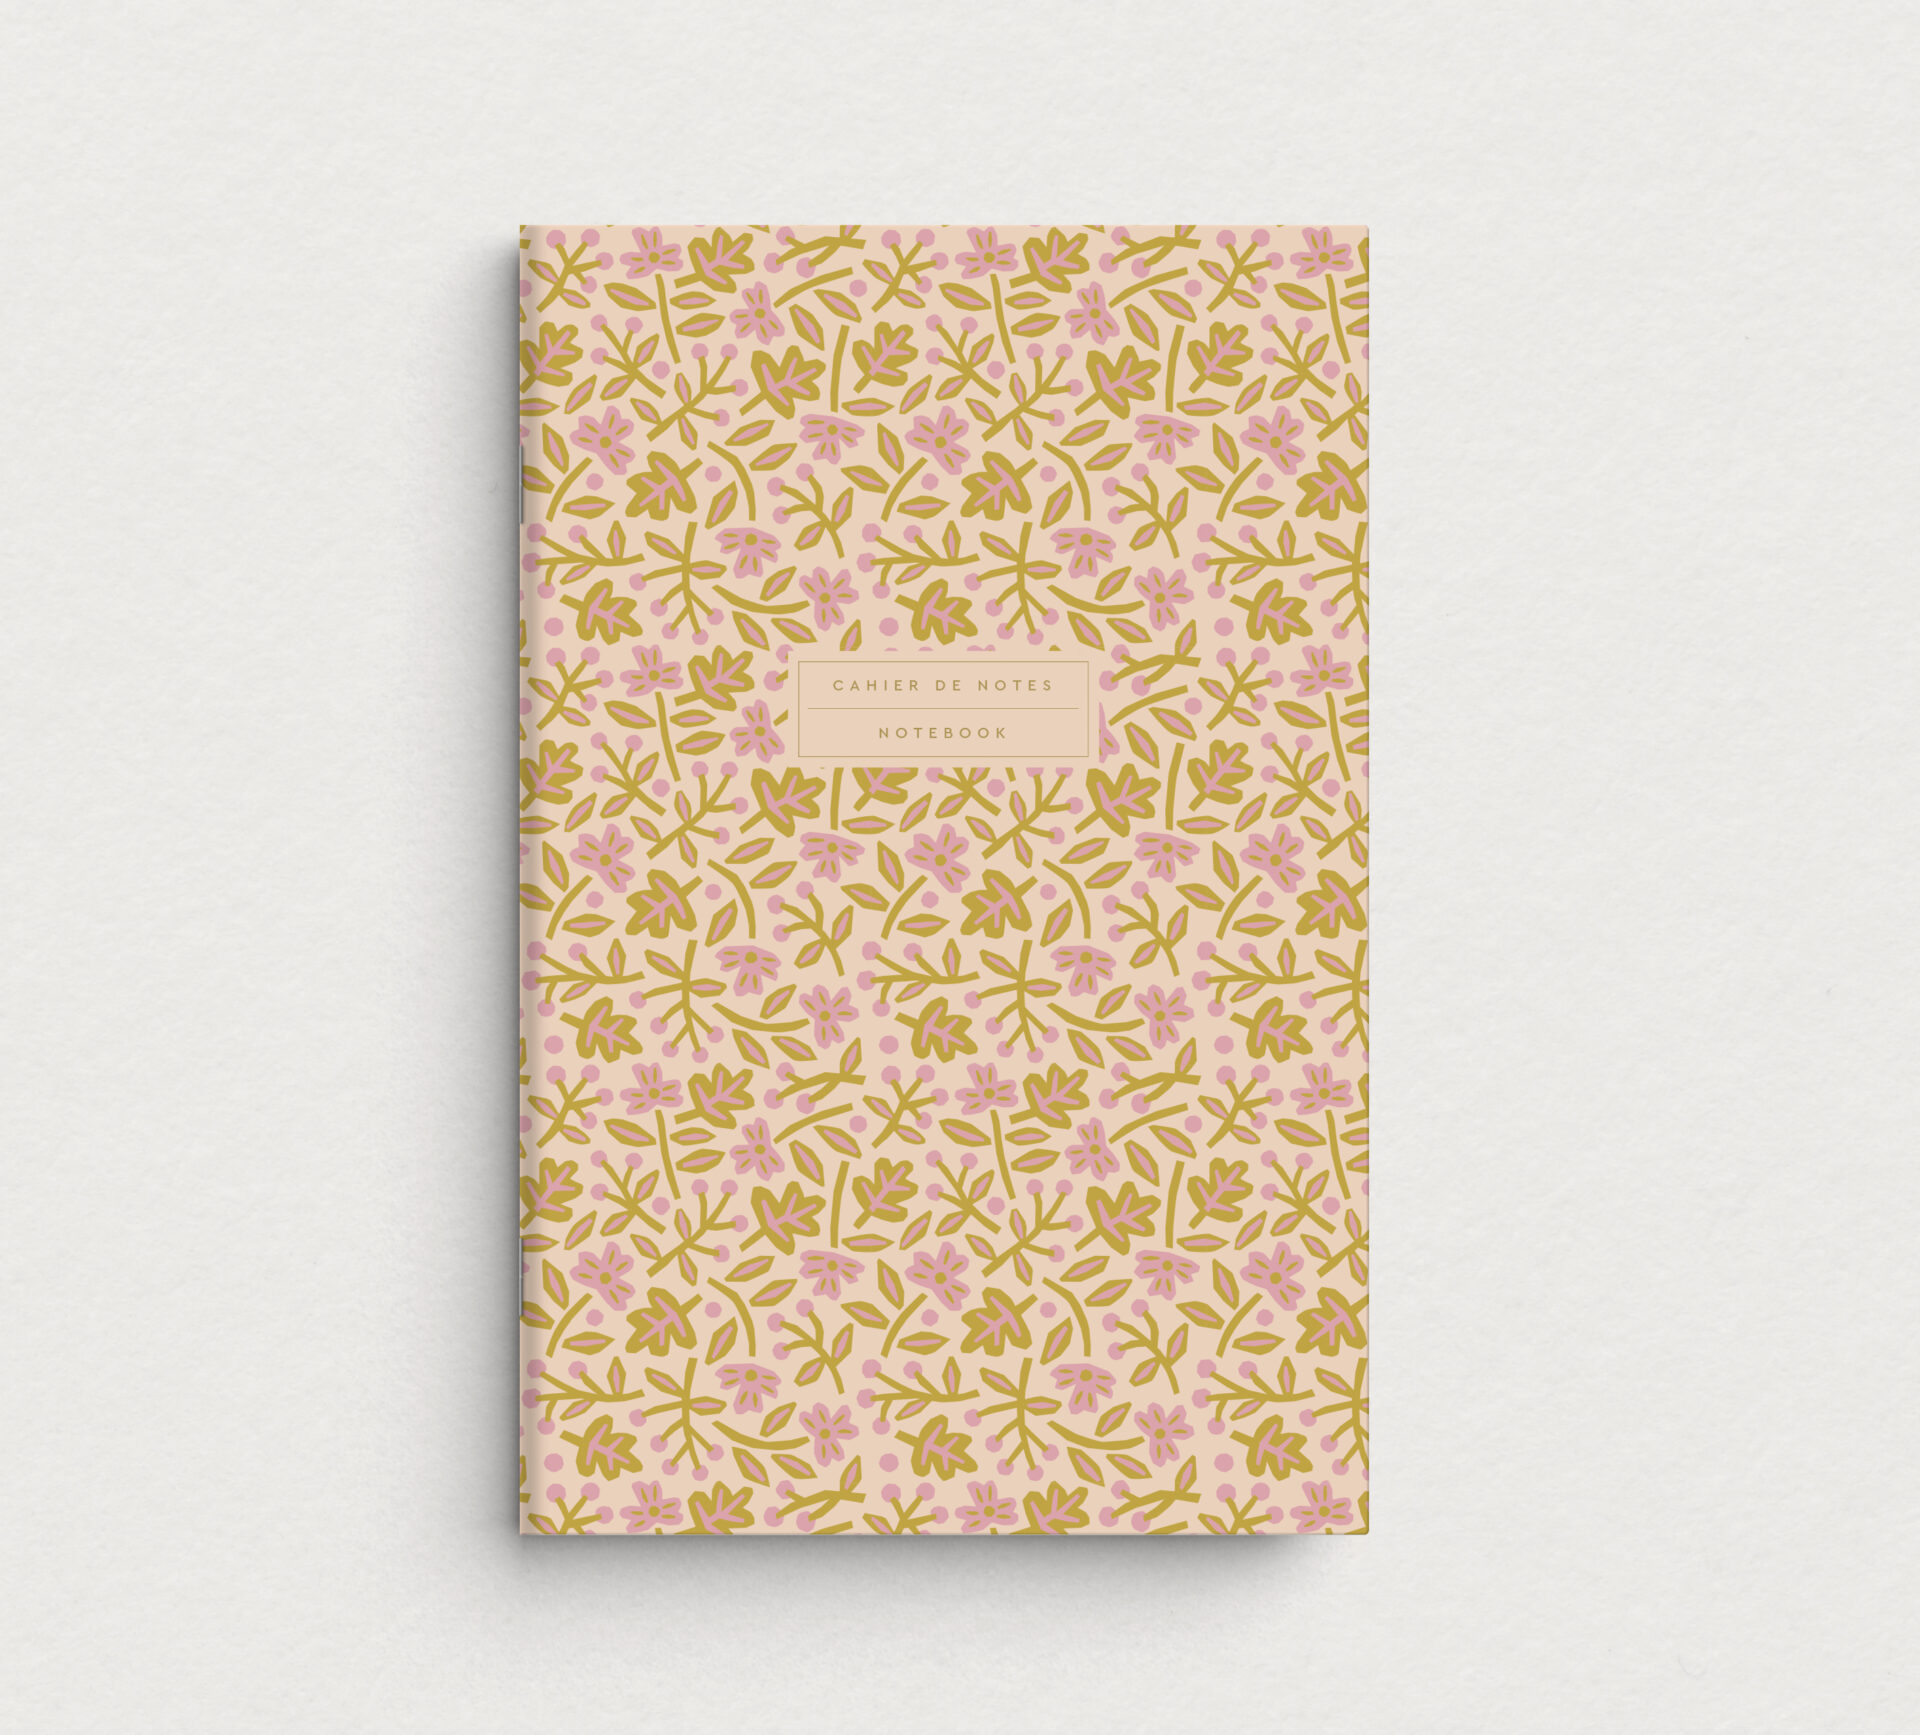 Cahier de notes Marguerites - Image de marque et papeterie